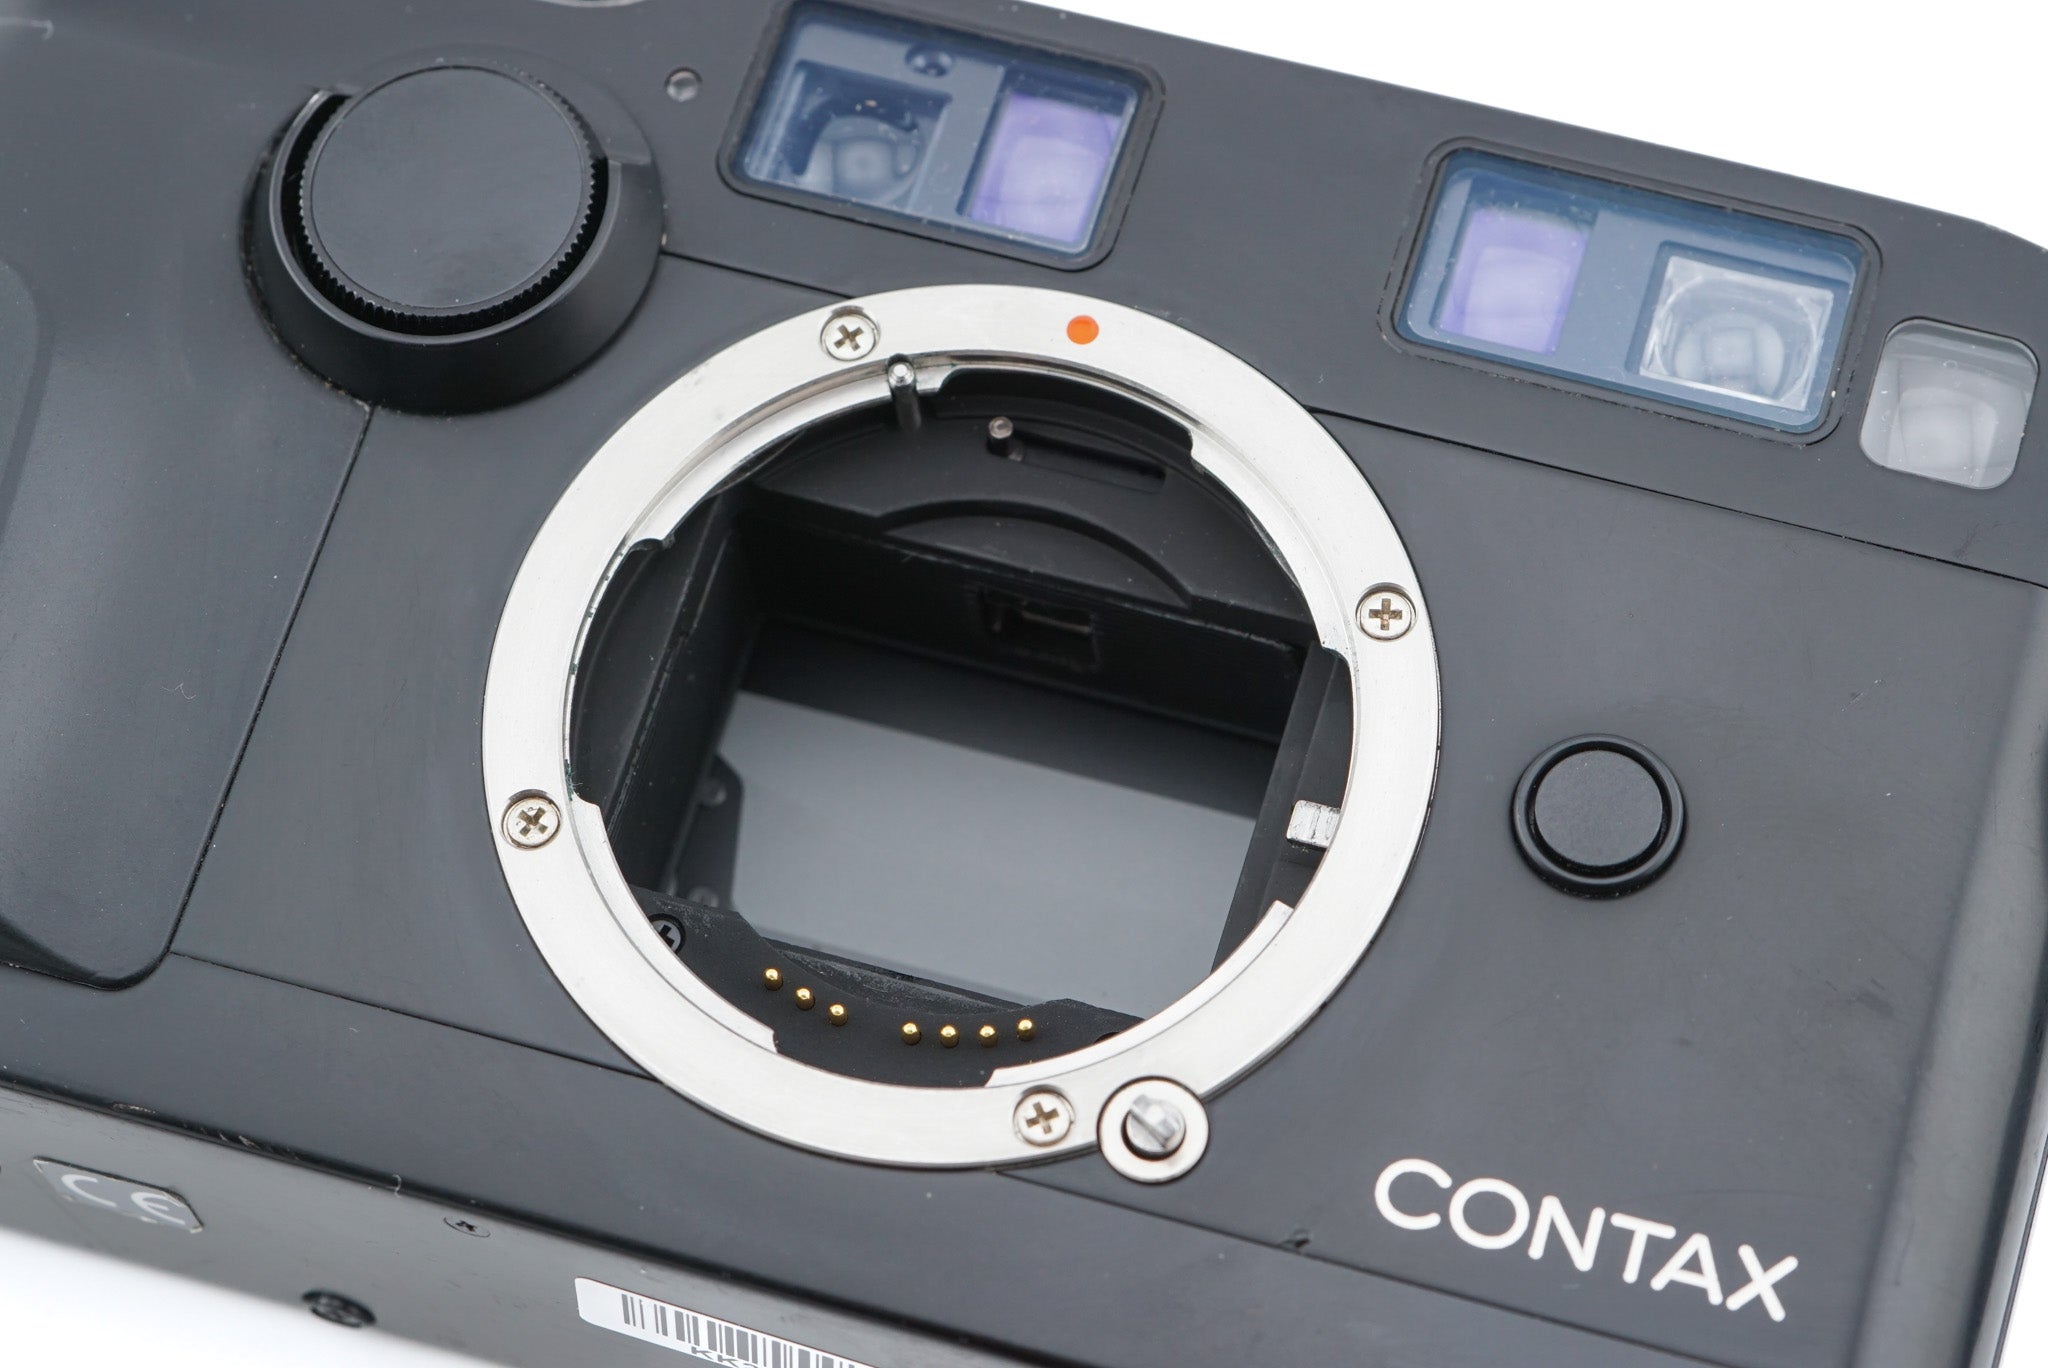 Contax G2 + 45mm f2 Planar T* + 28mm f2.8 Biogon T* + TLA 200 + 